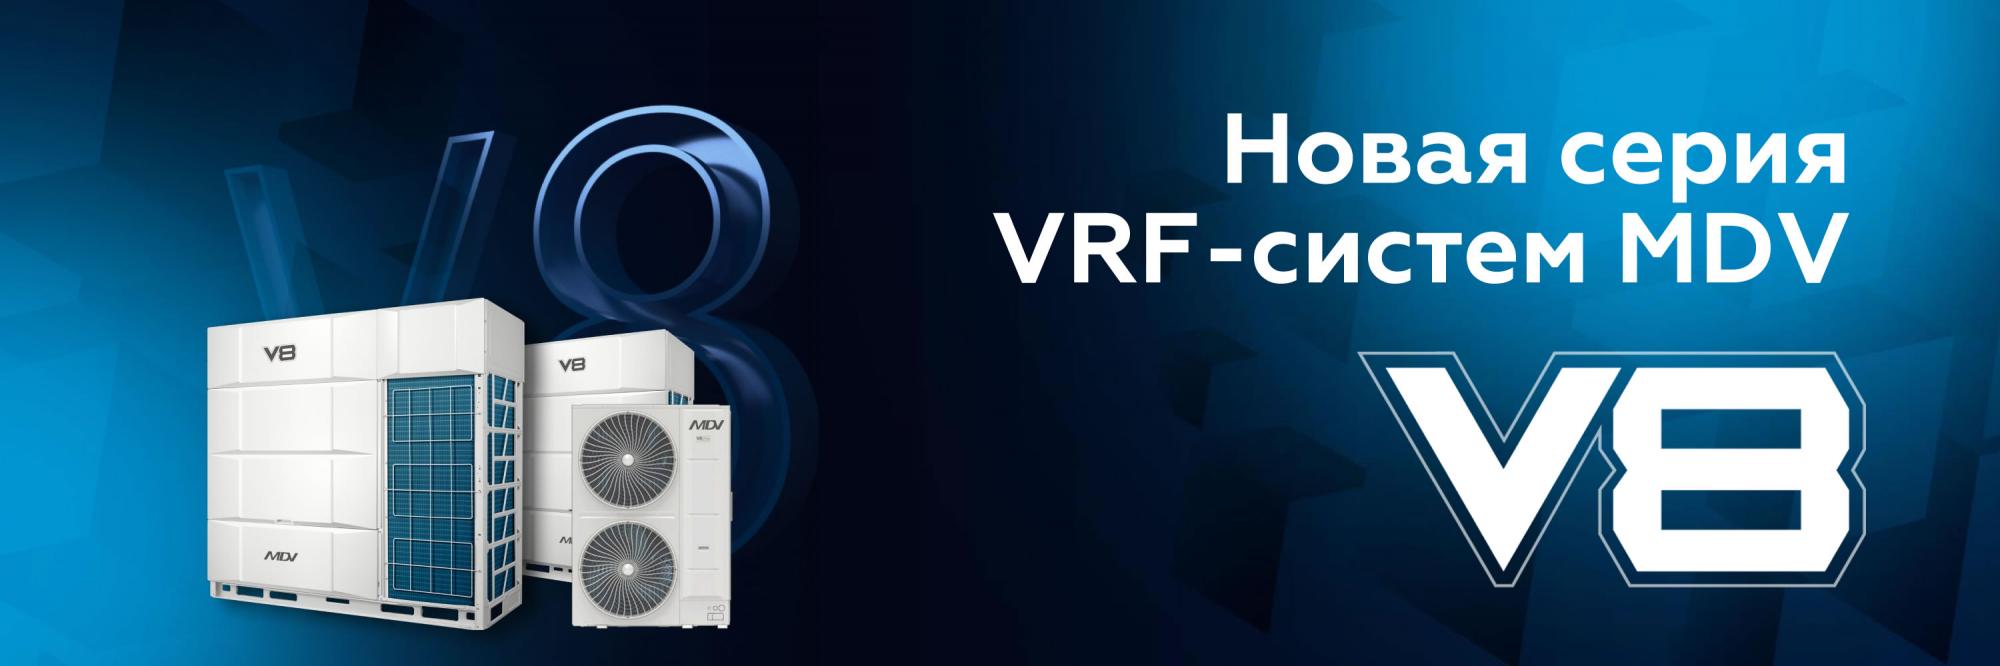 Новая серия VRF-систем MDV V8